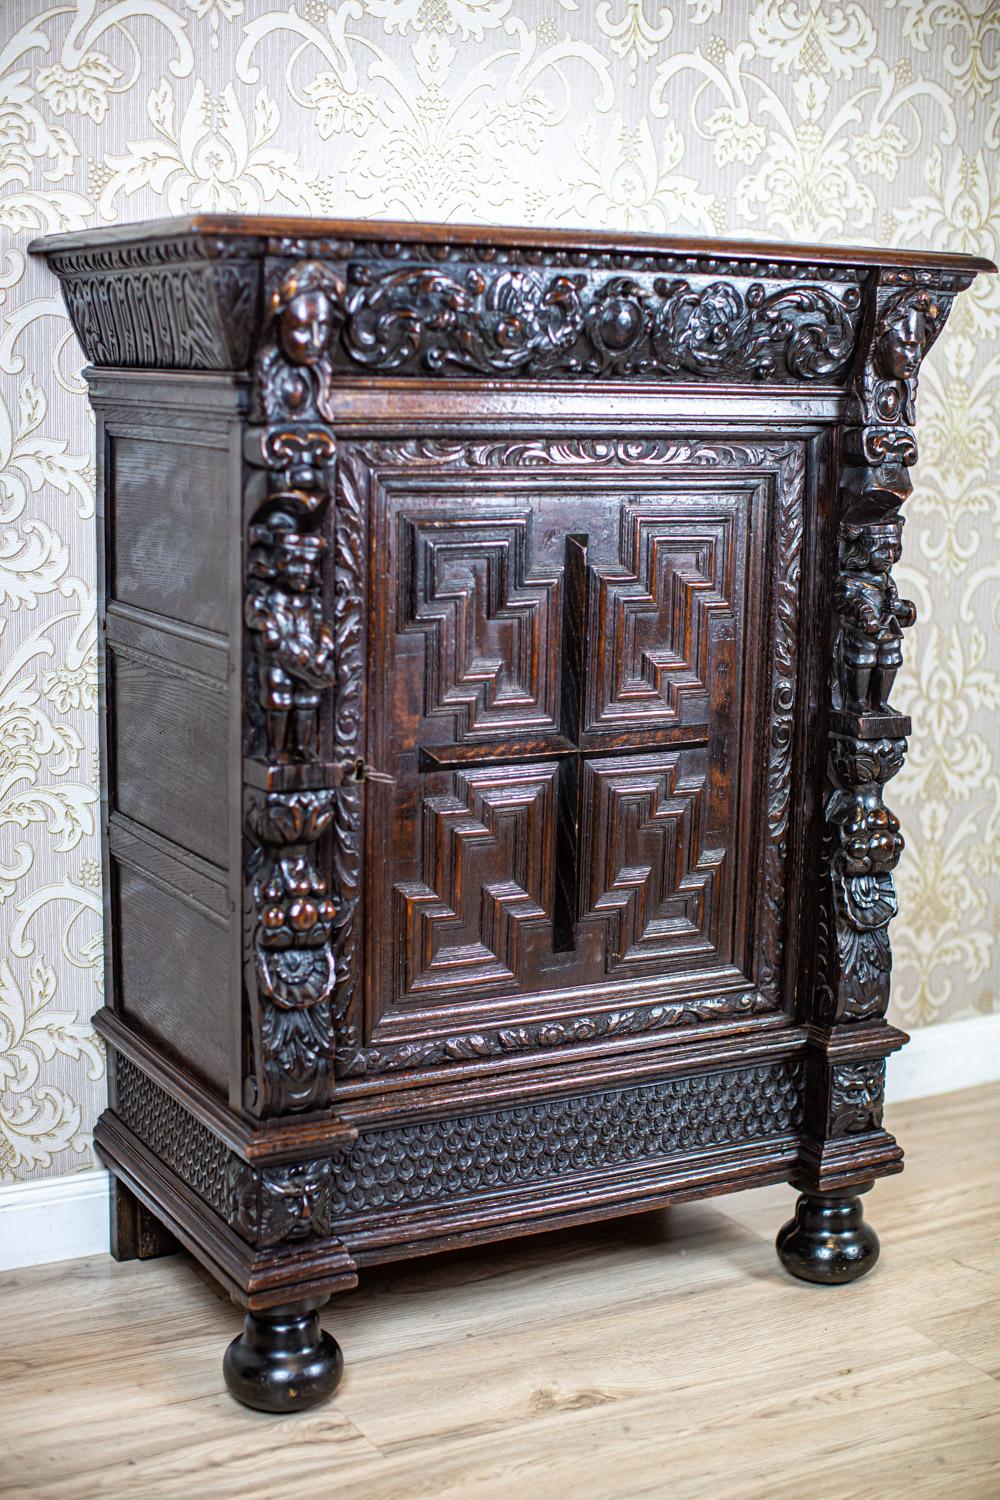 Kommode aus massivem geschnitztem Eichenholz aus dem späten 19. Jahrhundert

Einflügeliger Aufbau mit Gesims und einer einzigen Schublade, die oben mit einer Tischplatte abgedeckt ist. Die Vorderseite der Möbel ist mit reichen Schnitzereien